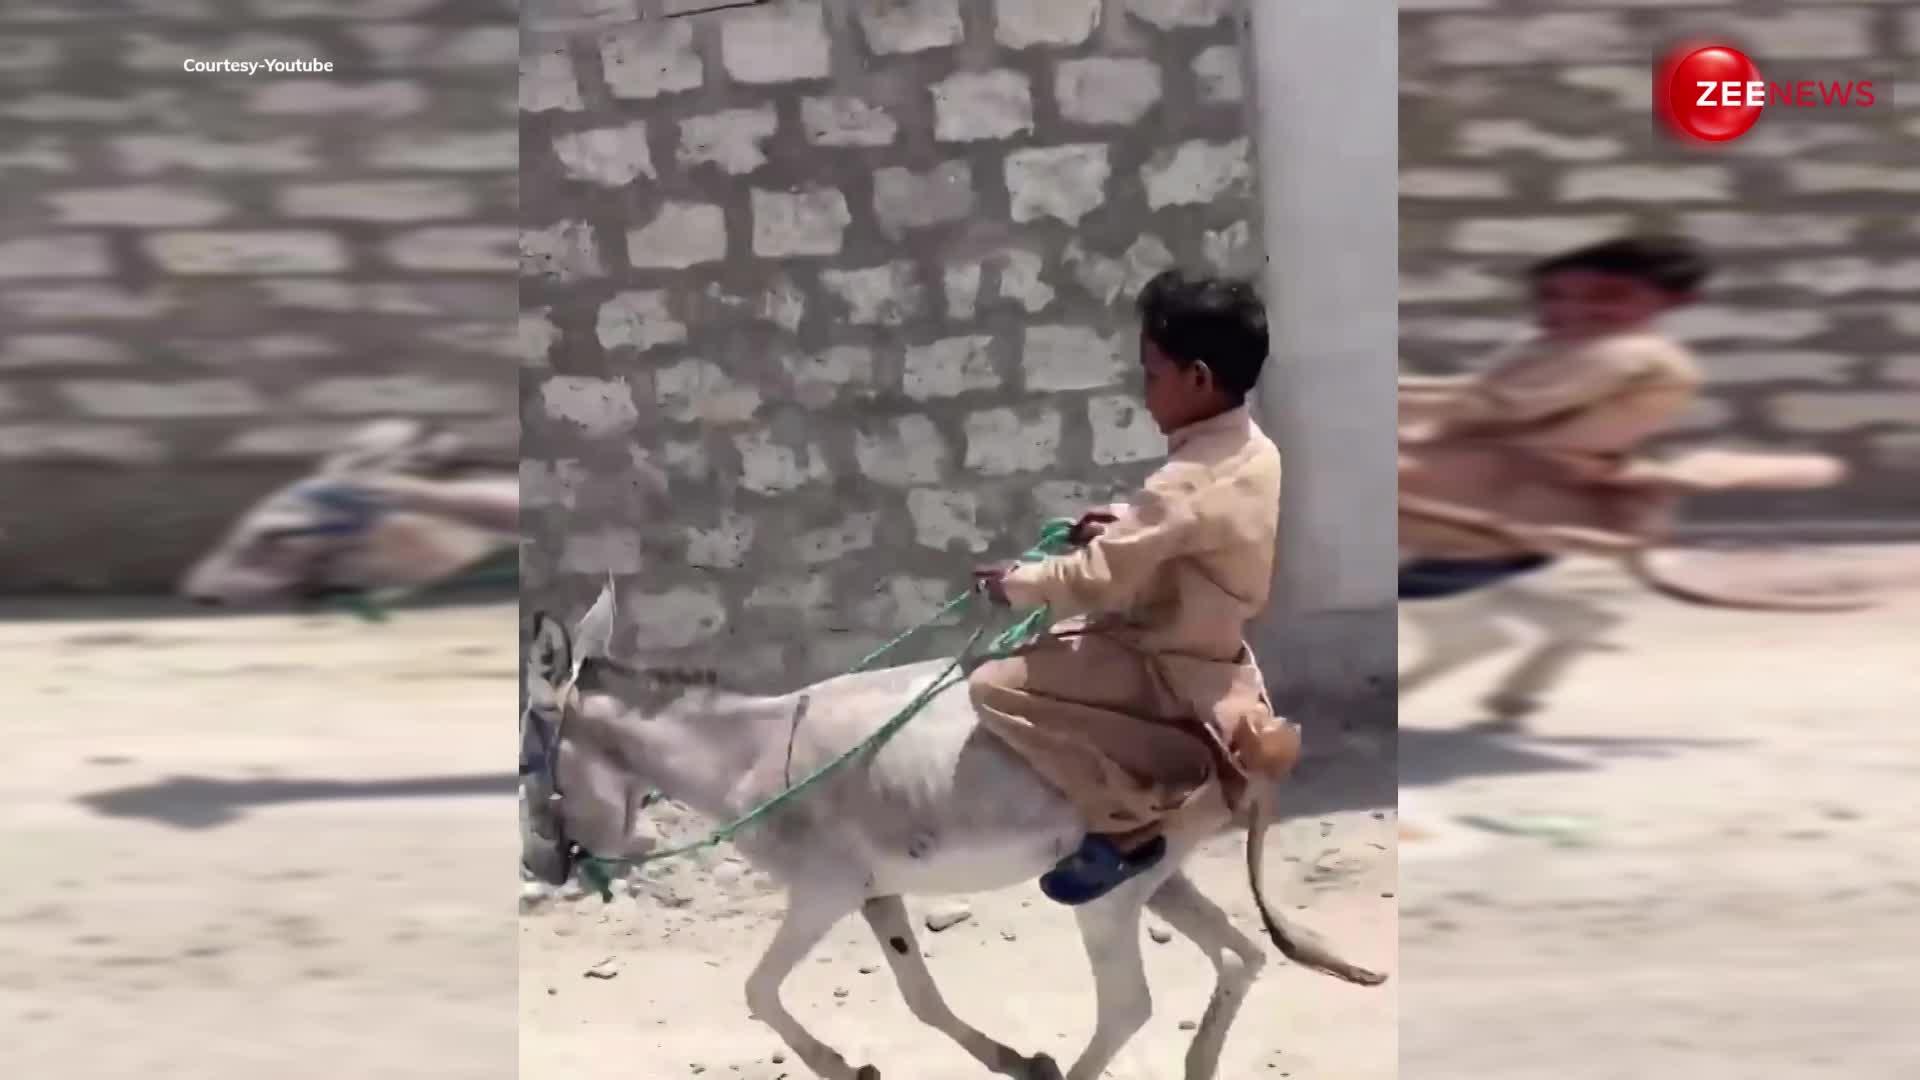 Donkey ride video: घोड़े की सवारी छोड़ लड़के ने की गधे की सवारी वीडियो देख, हंसी से लोट-पोट हुए लोग